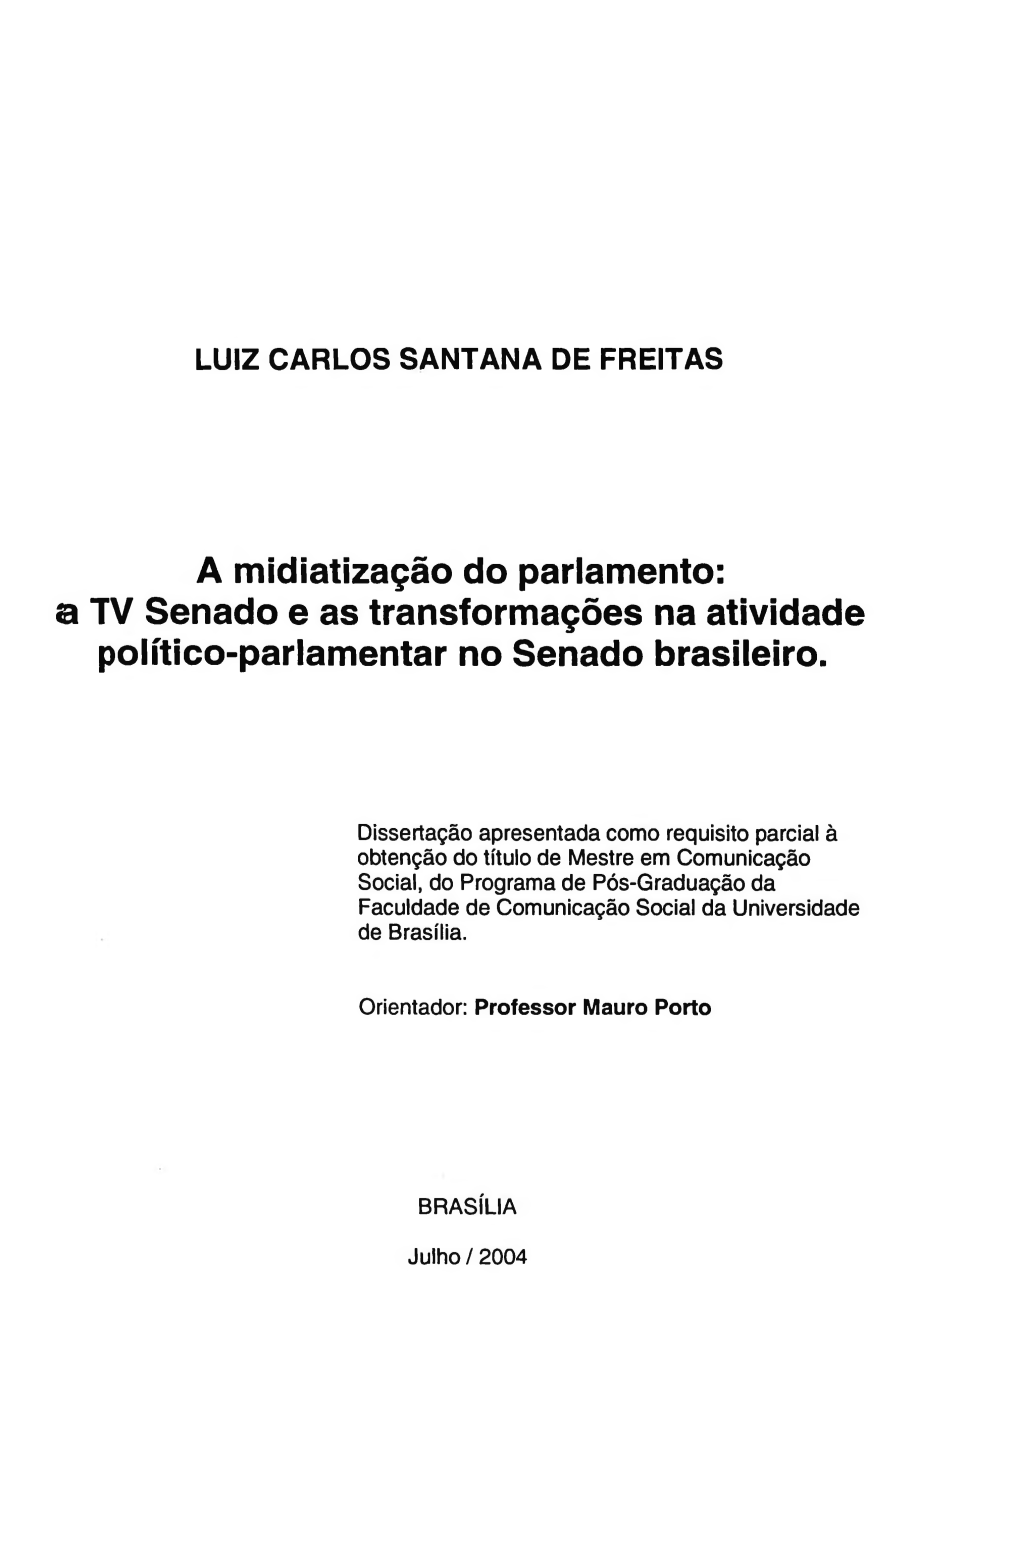 A TV Senado E As Transformações Na Atividade Político-Parlamentar No Senado Brasileiro